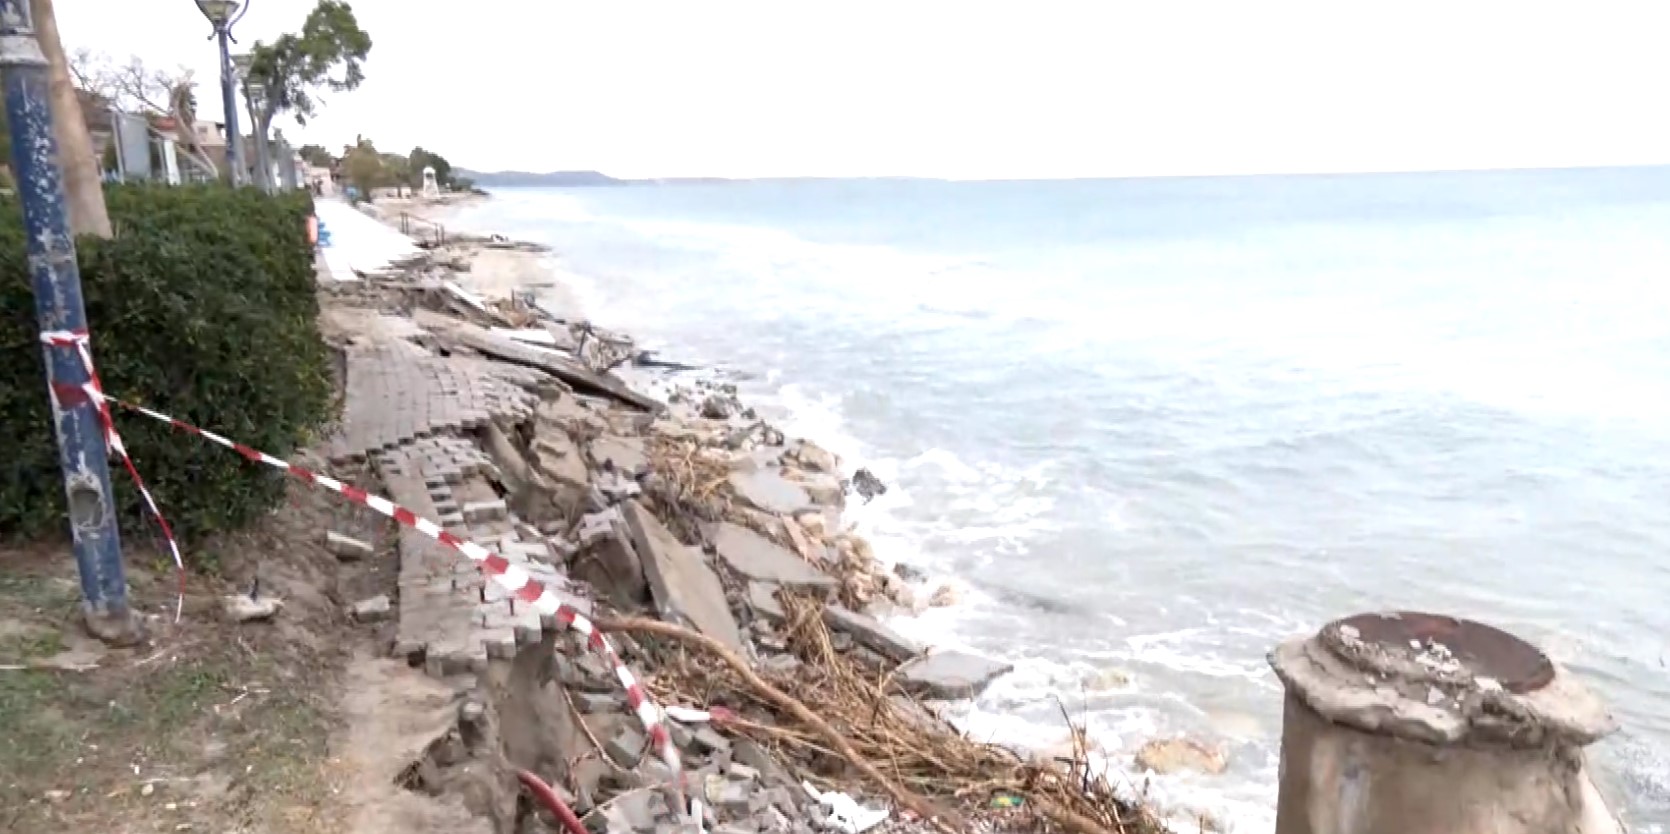 Χαλκιδική: Στα 2 εκατομμύρια ευρώ το ύψος της καταστροφής από την κακοκαιρία στο δήμο Κασσάνδρας